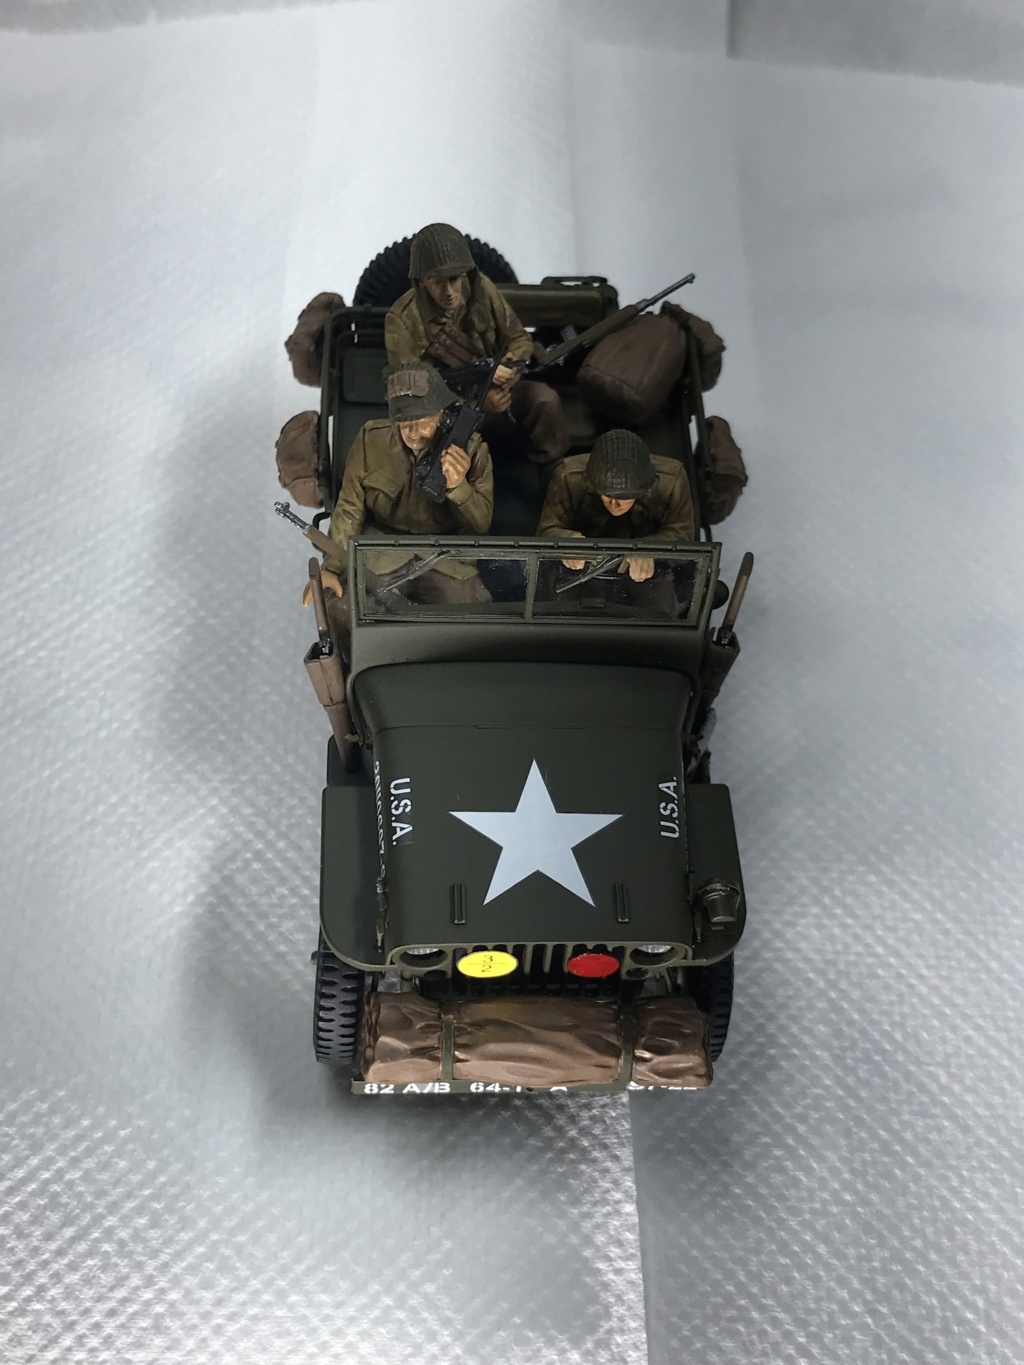 épisode 3 TERMINÉ dans la campagne Normande non loin de la RED BALL et le diorama montage M26 en cours  - Page 2 C39dcc10